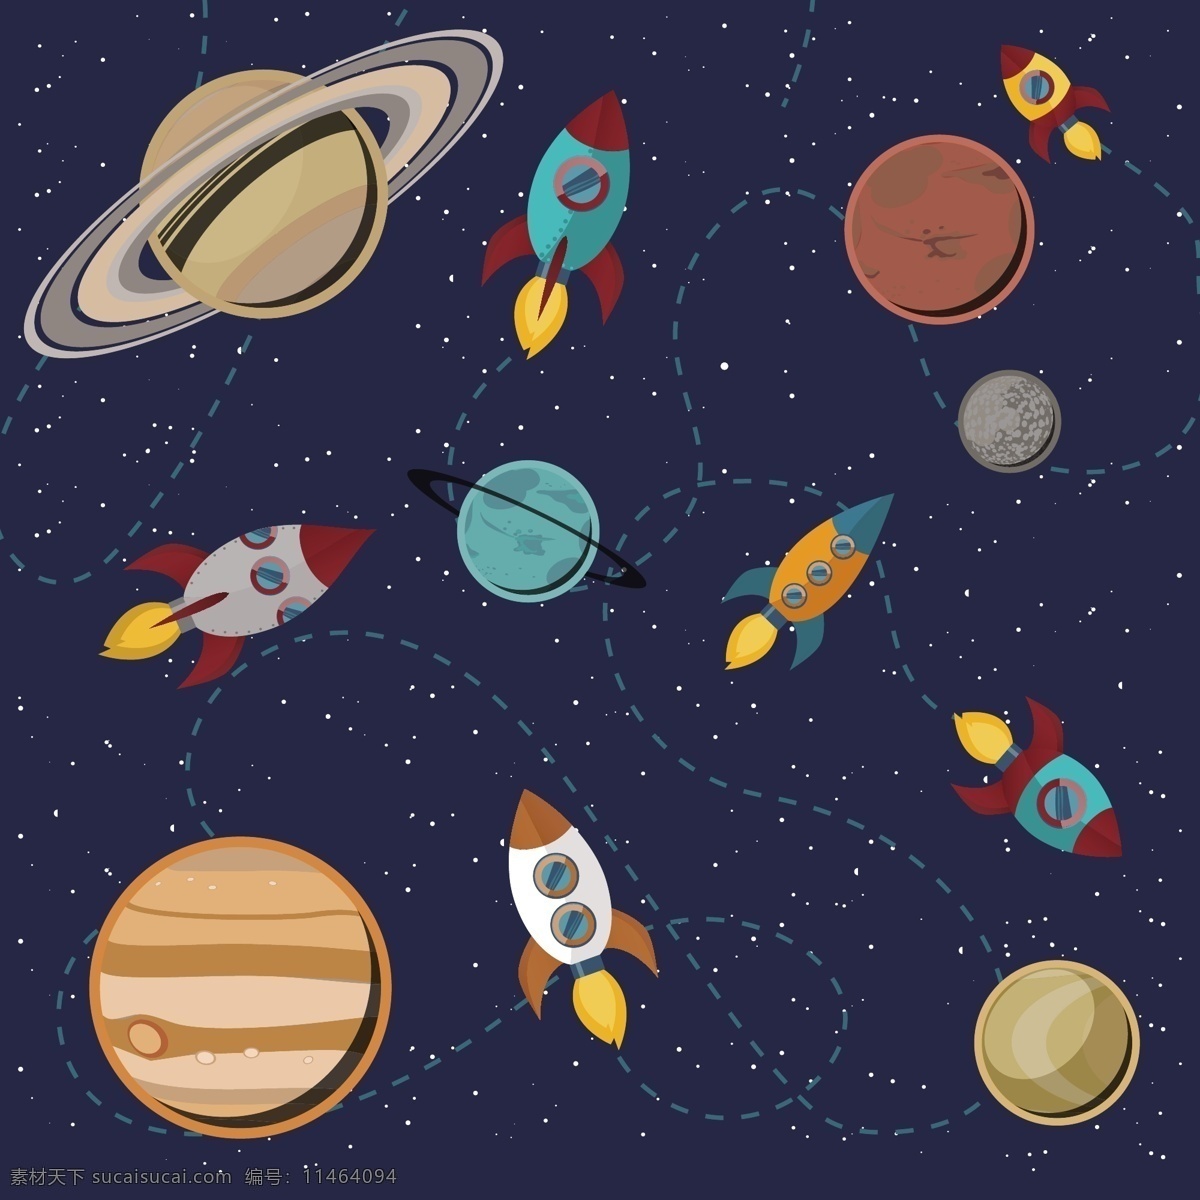 外 太空 宇航员 主题 插画 扁平化 矢量插画 创意装饰 图案设计 宇航员主题 外星 旅行 星空 飞船 插画图案 儿童卡通 宇宙 太空探索 星球 星体 动漫动画